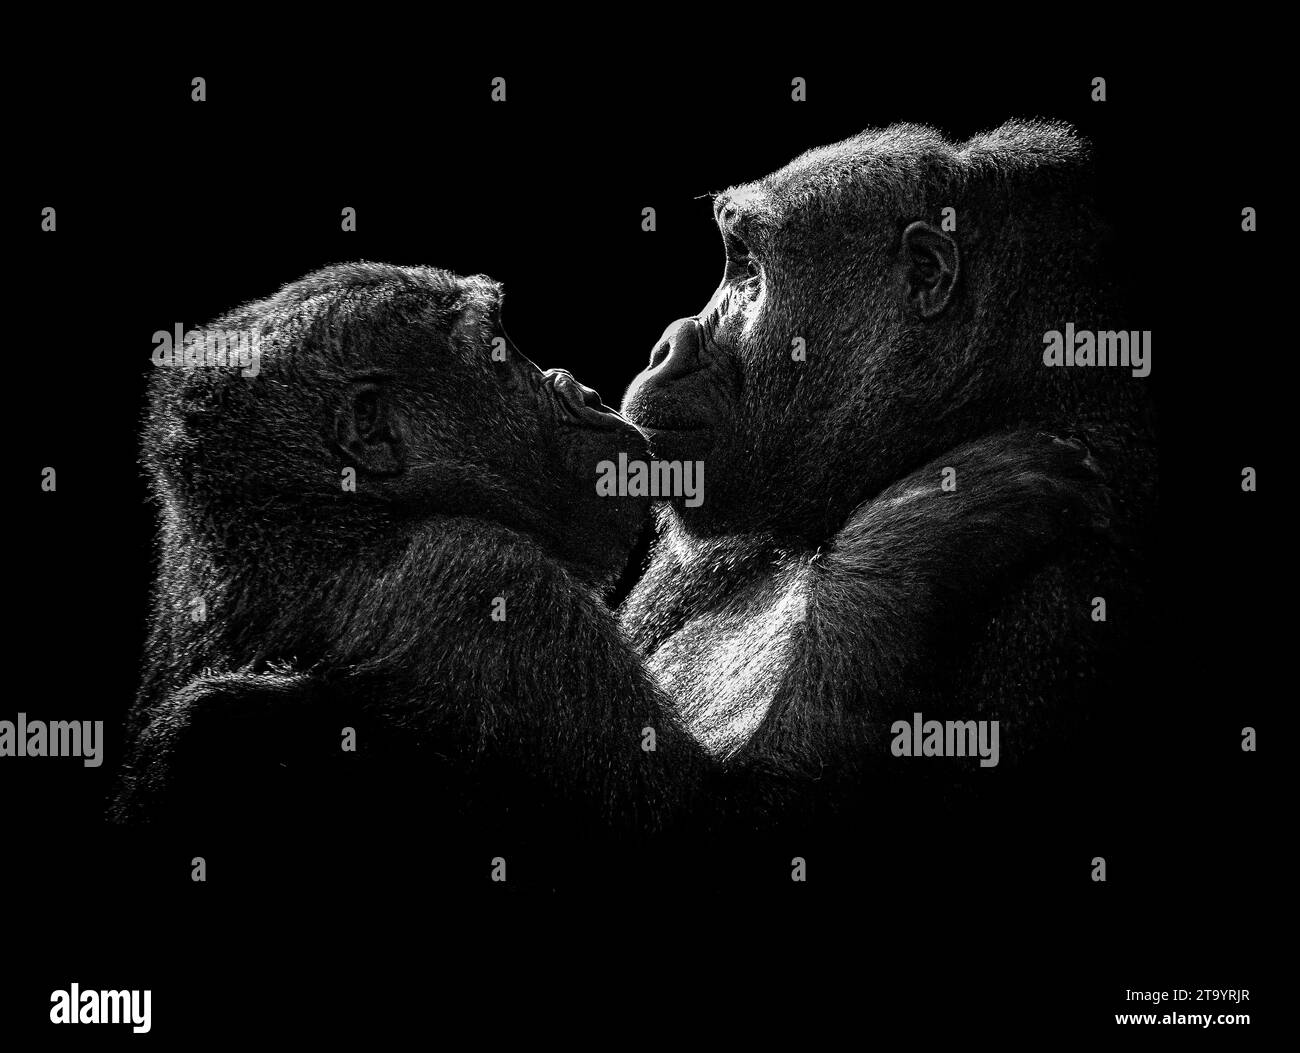 I fratelli condividono uno ZOO DI BLACKPOOL, LE ADORABILI IMMAGINI INGLESI mostrano due gorilla per metà gemellati che si coccolano. Le immagini del 15 novembre mostrano Makar Foto Stock